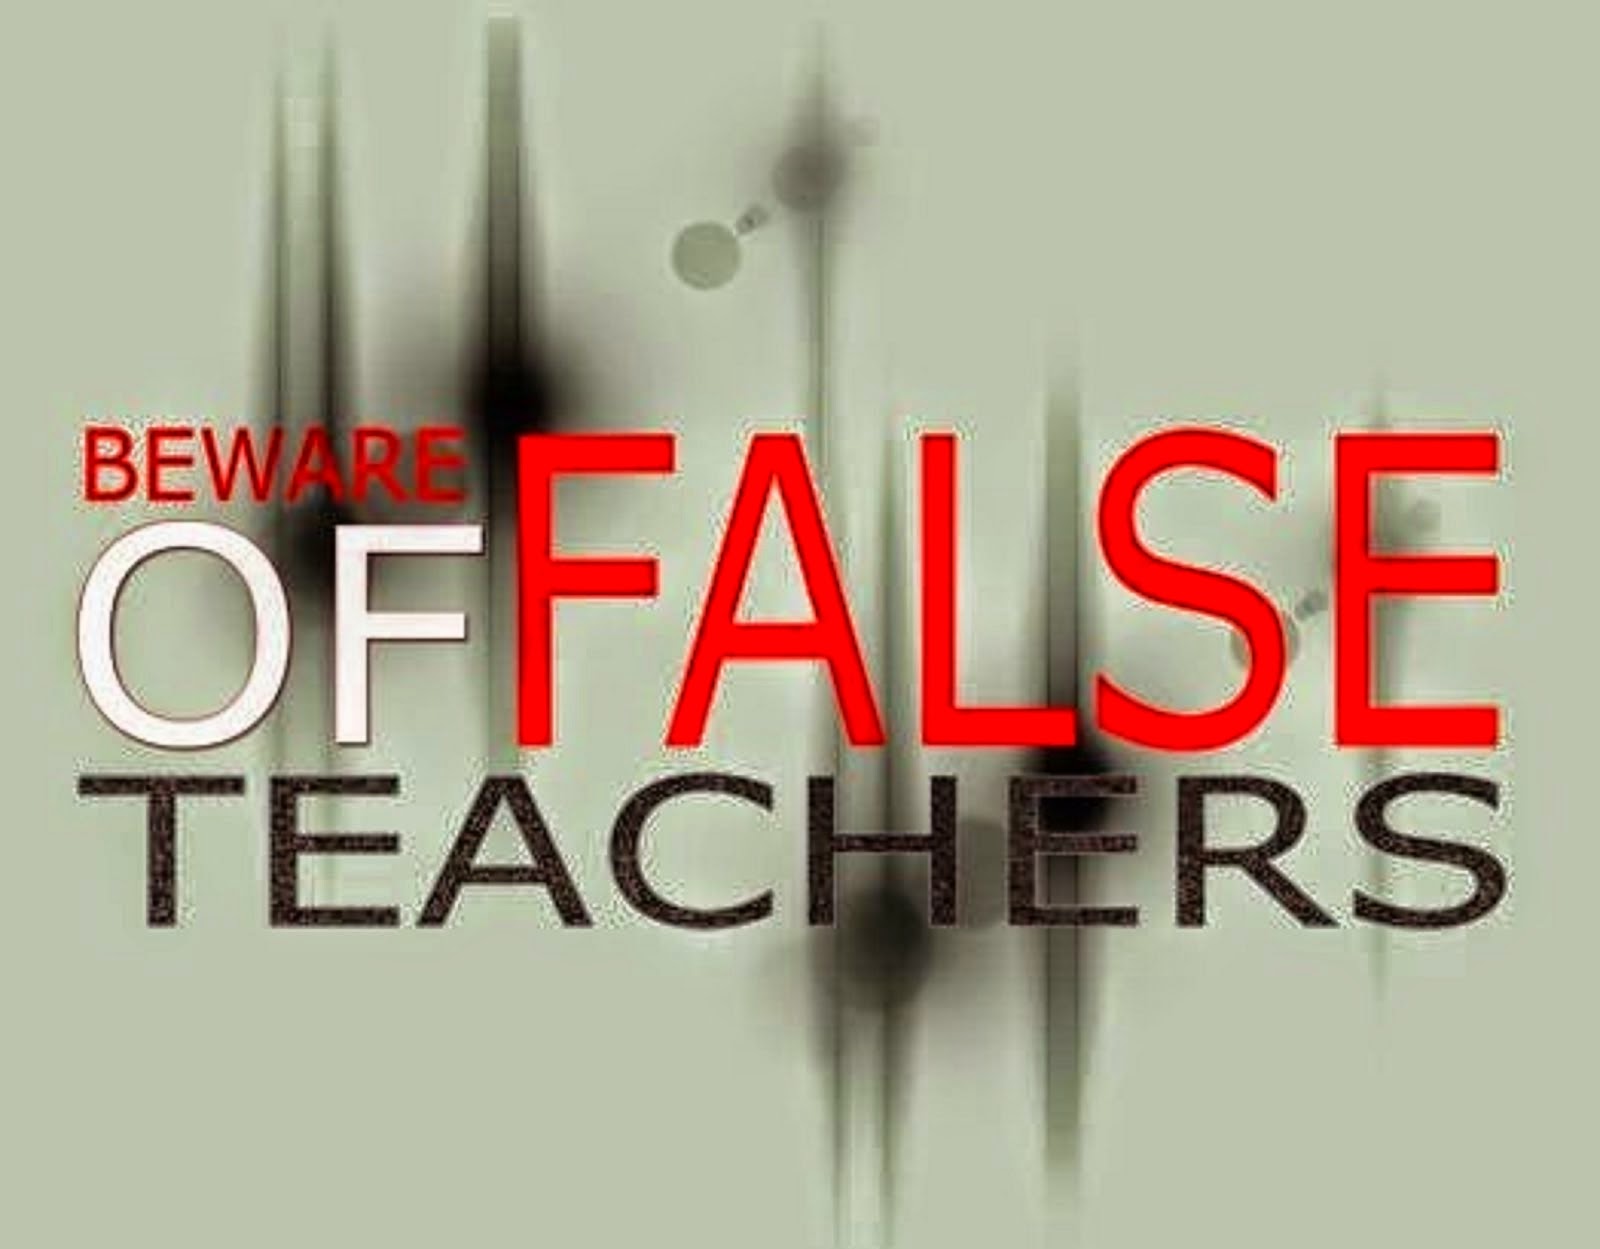 BEWARE OF FALSE TEACHERS